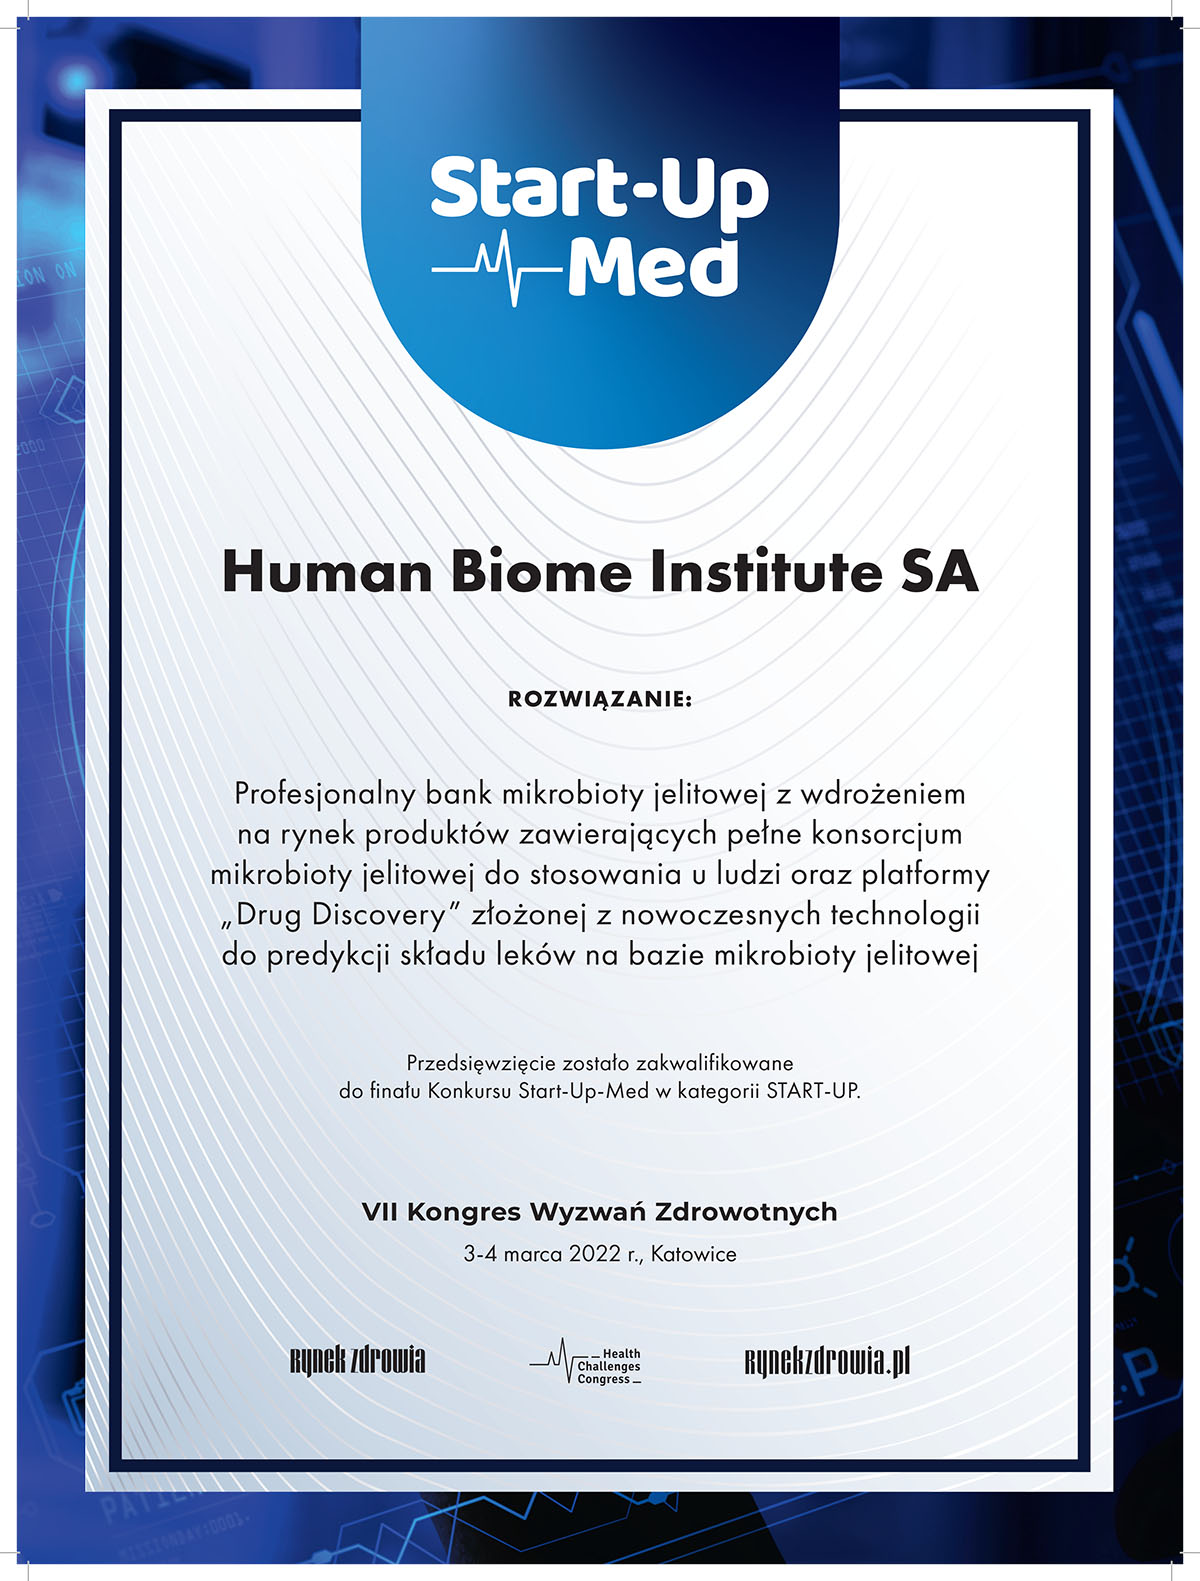 Human Biome Institute zwycięzcą Start-Up Med 2022!